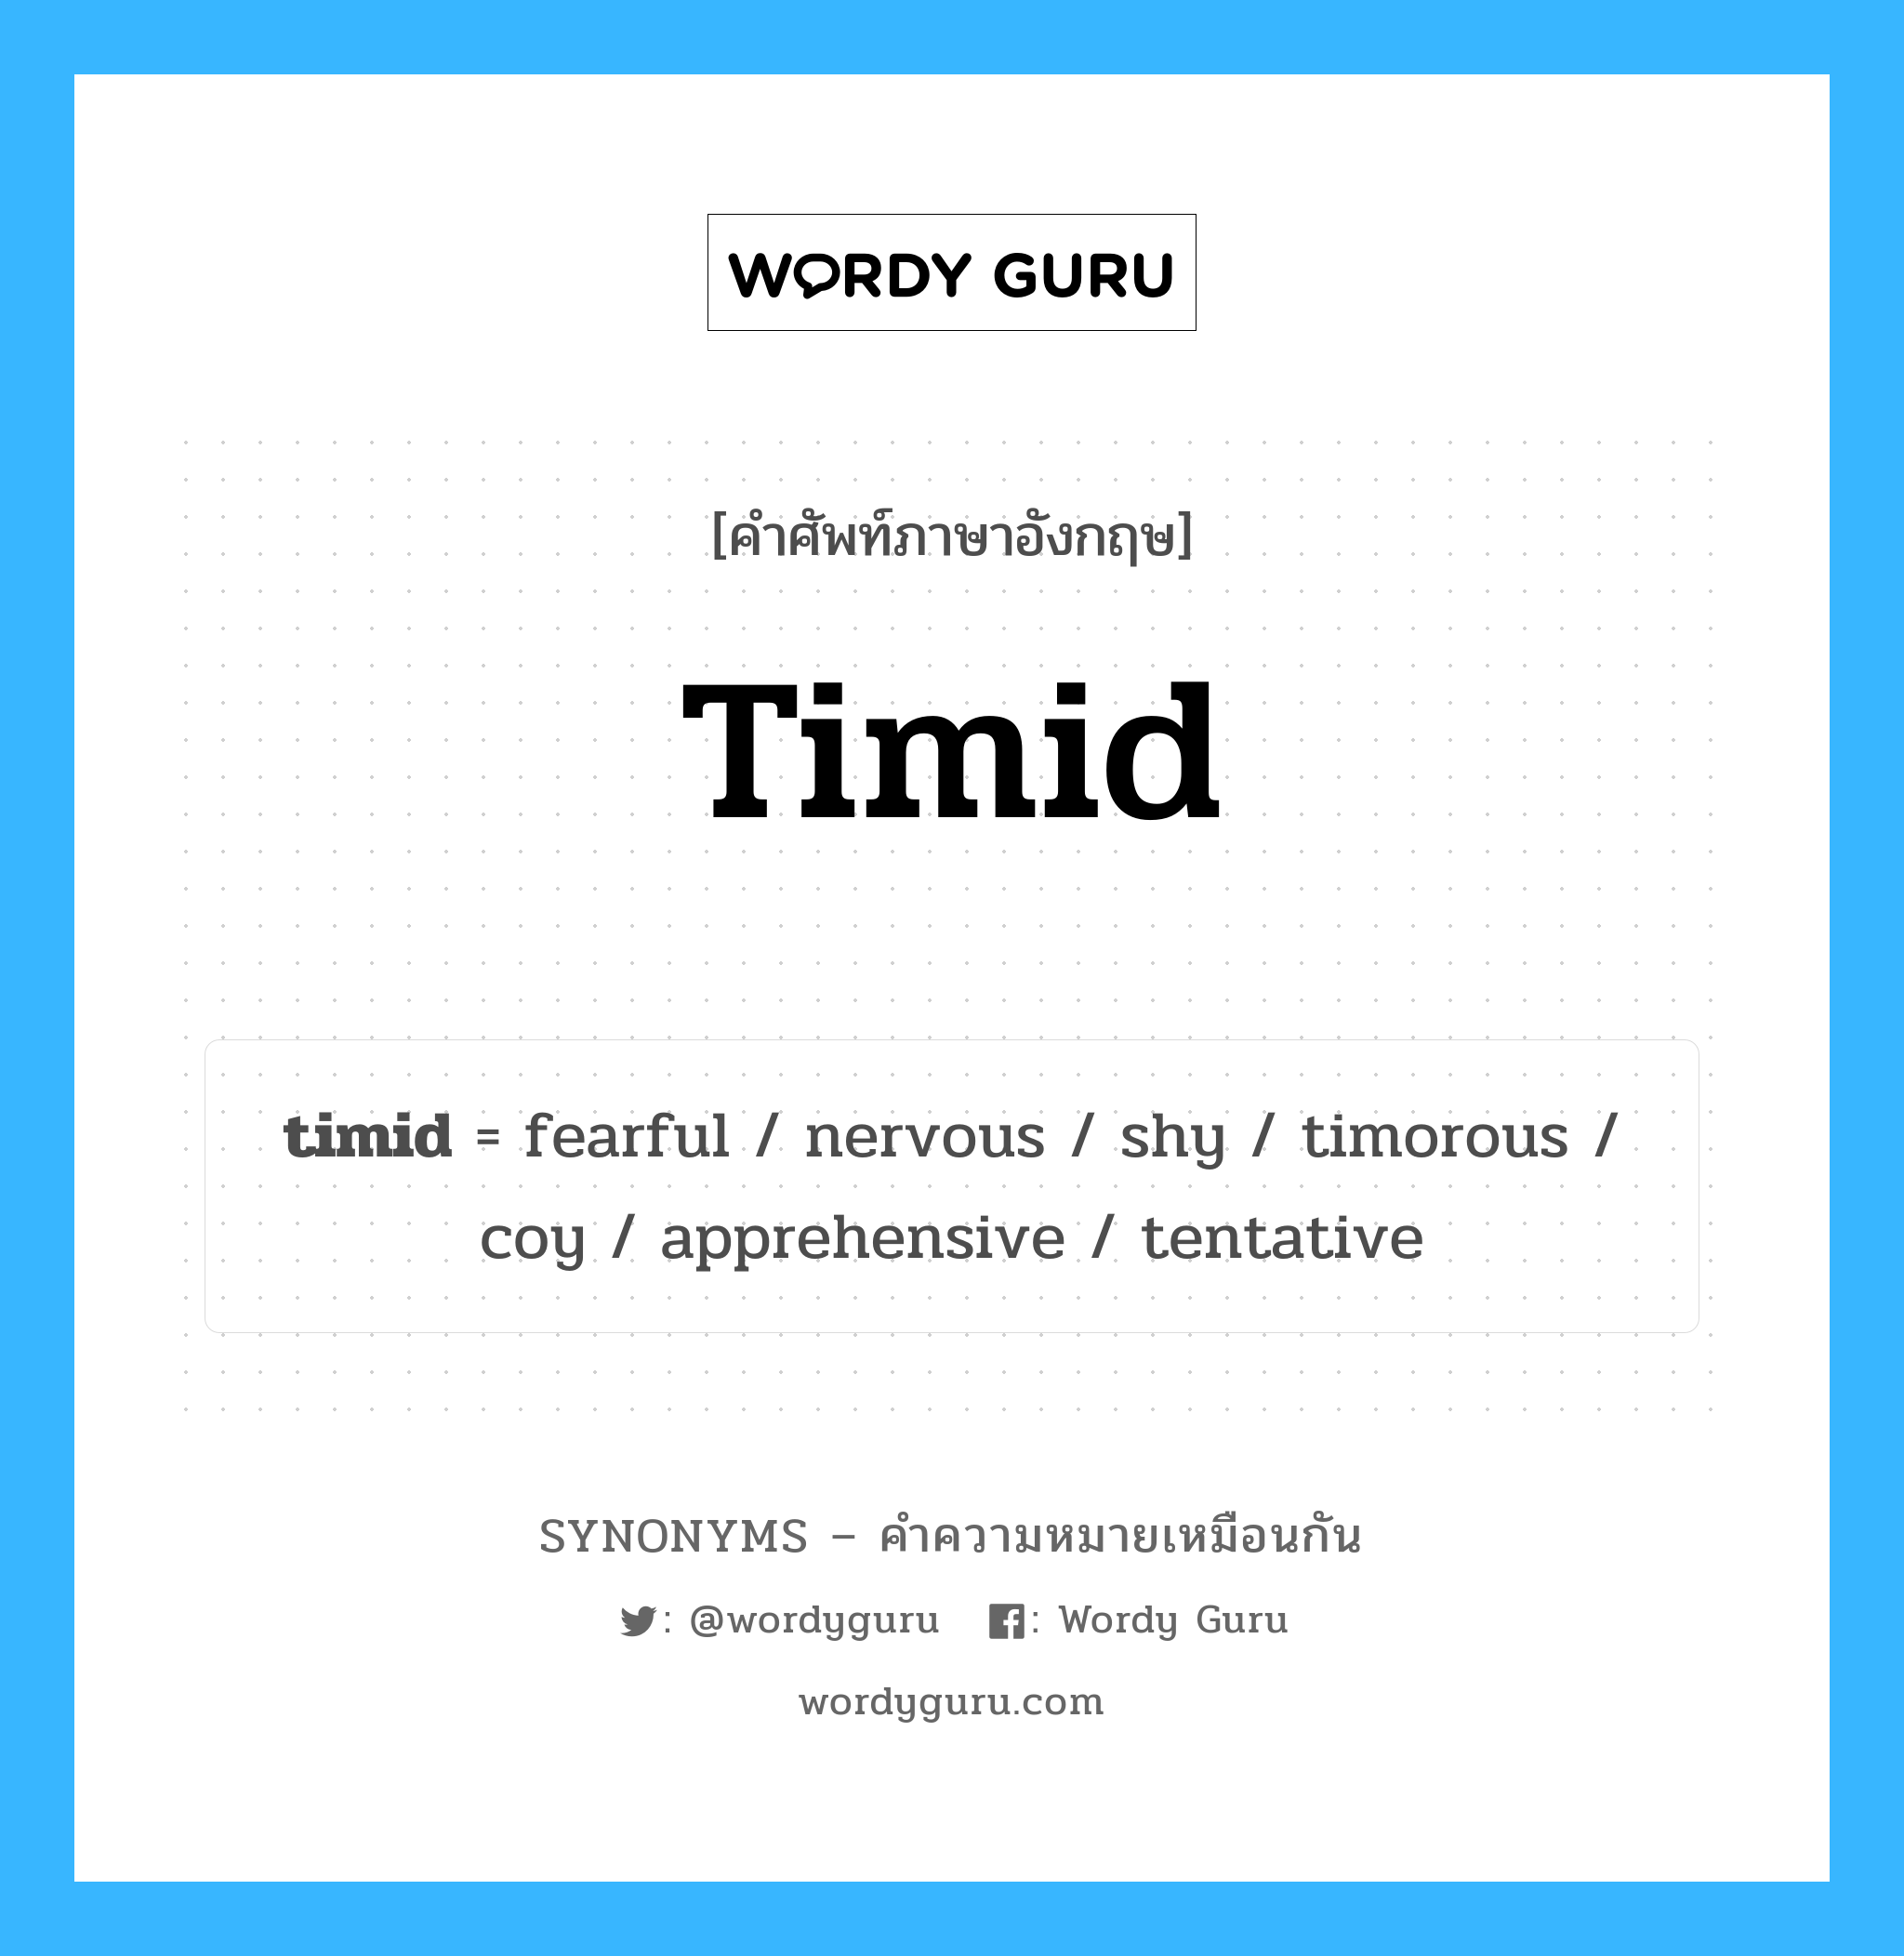 coy เป็นหนึ่งใน timid และมีคำอื่น ๆ อีกดังนี้, คำศัพท์ภาษาอังกฤษ coy ความหมายคล้ายกันกับ timid แปลว่า coy หมวด timid